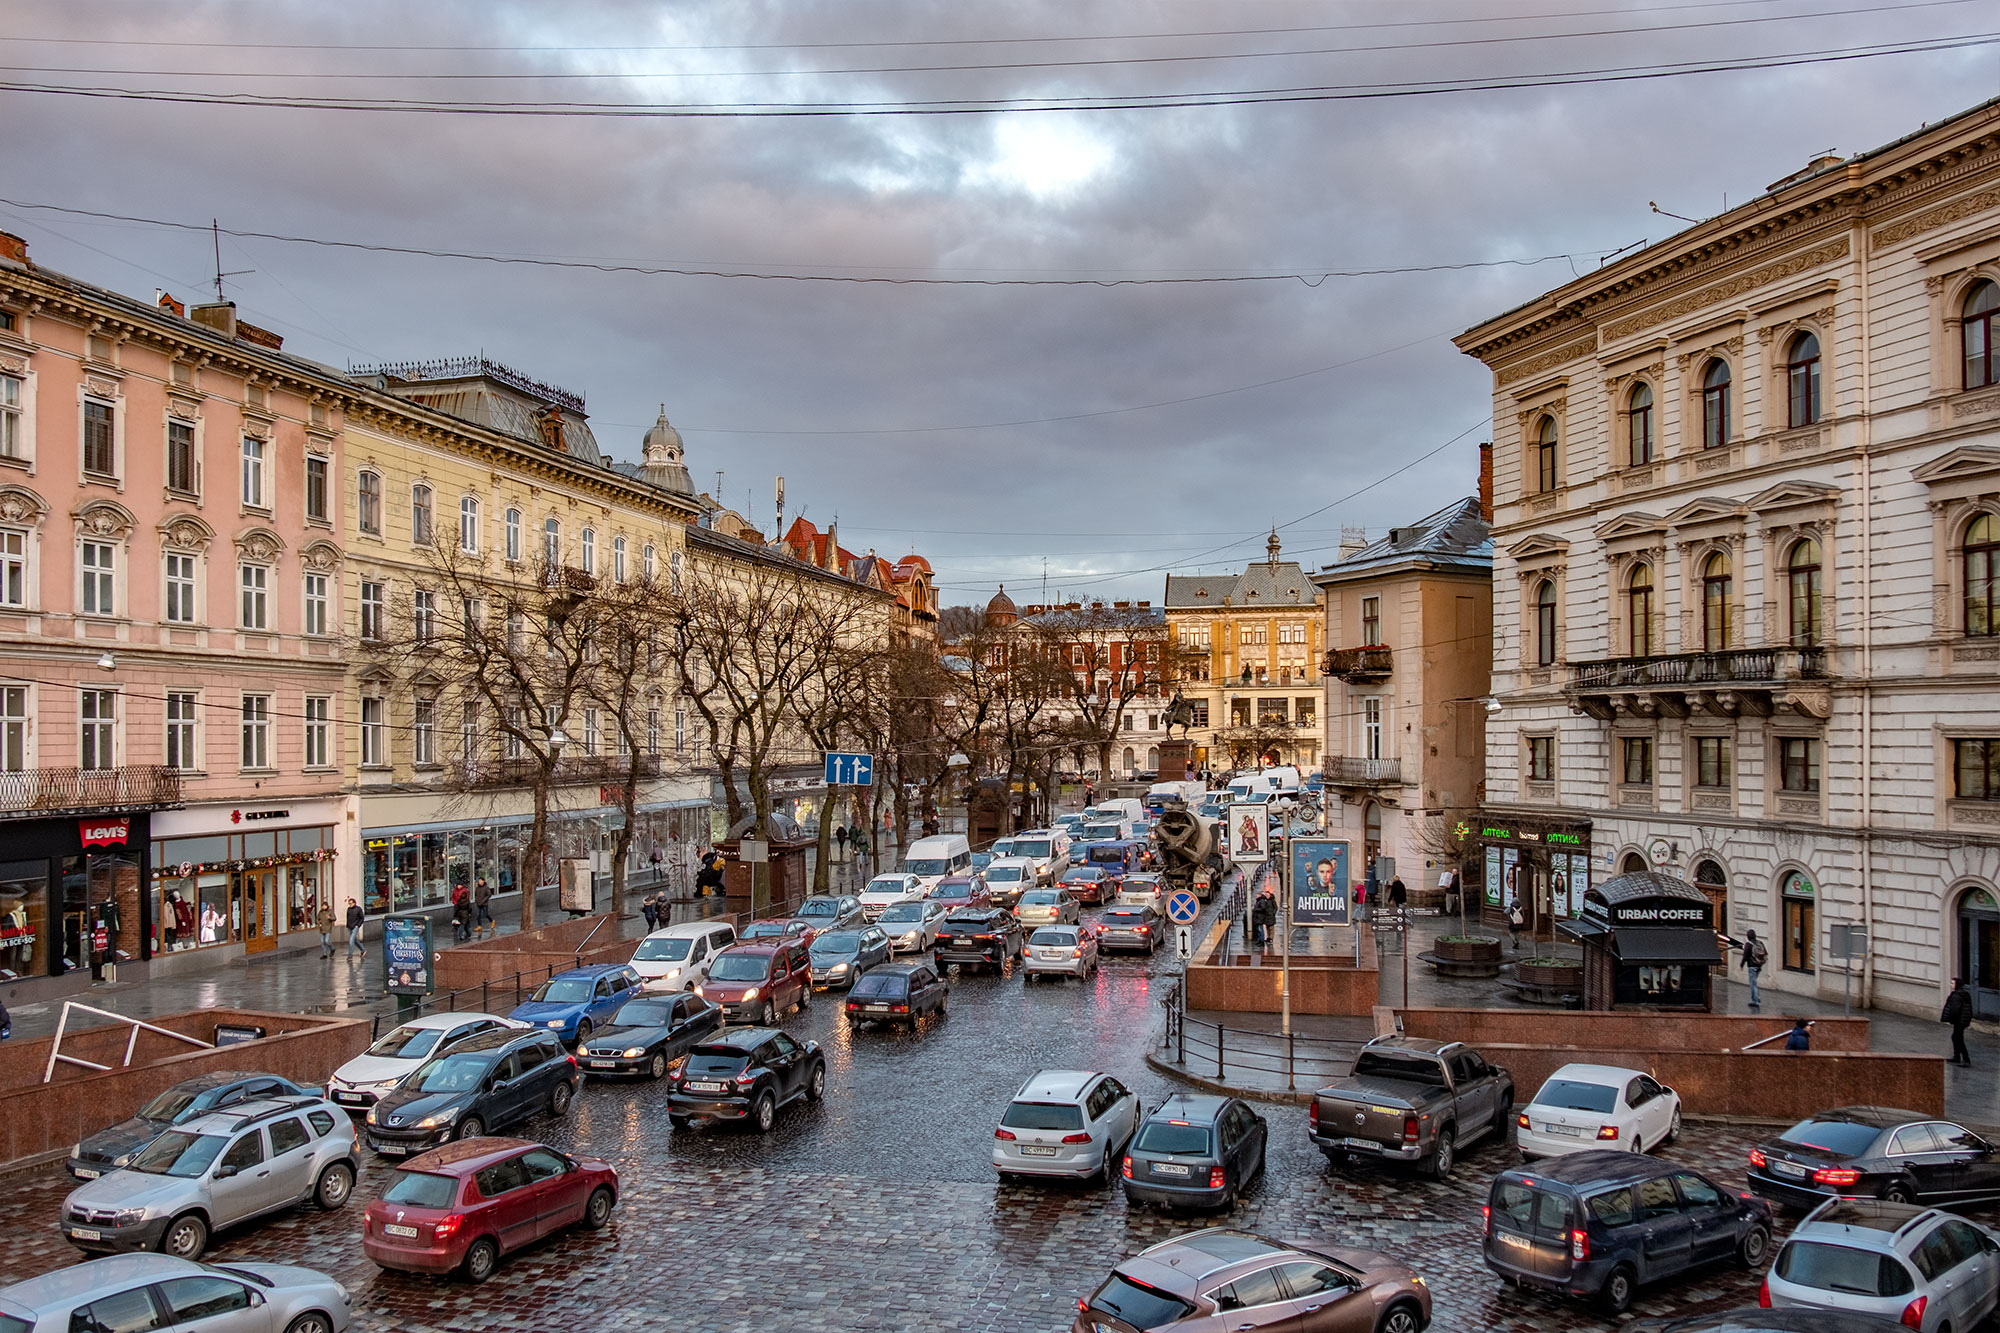 Lviv - Rush hour traffic